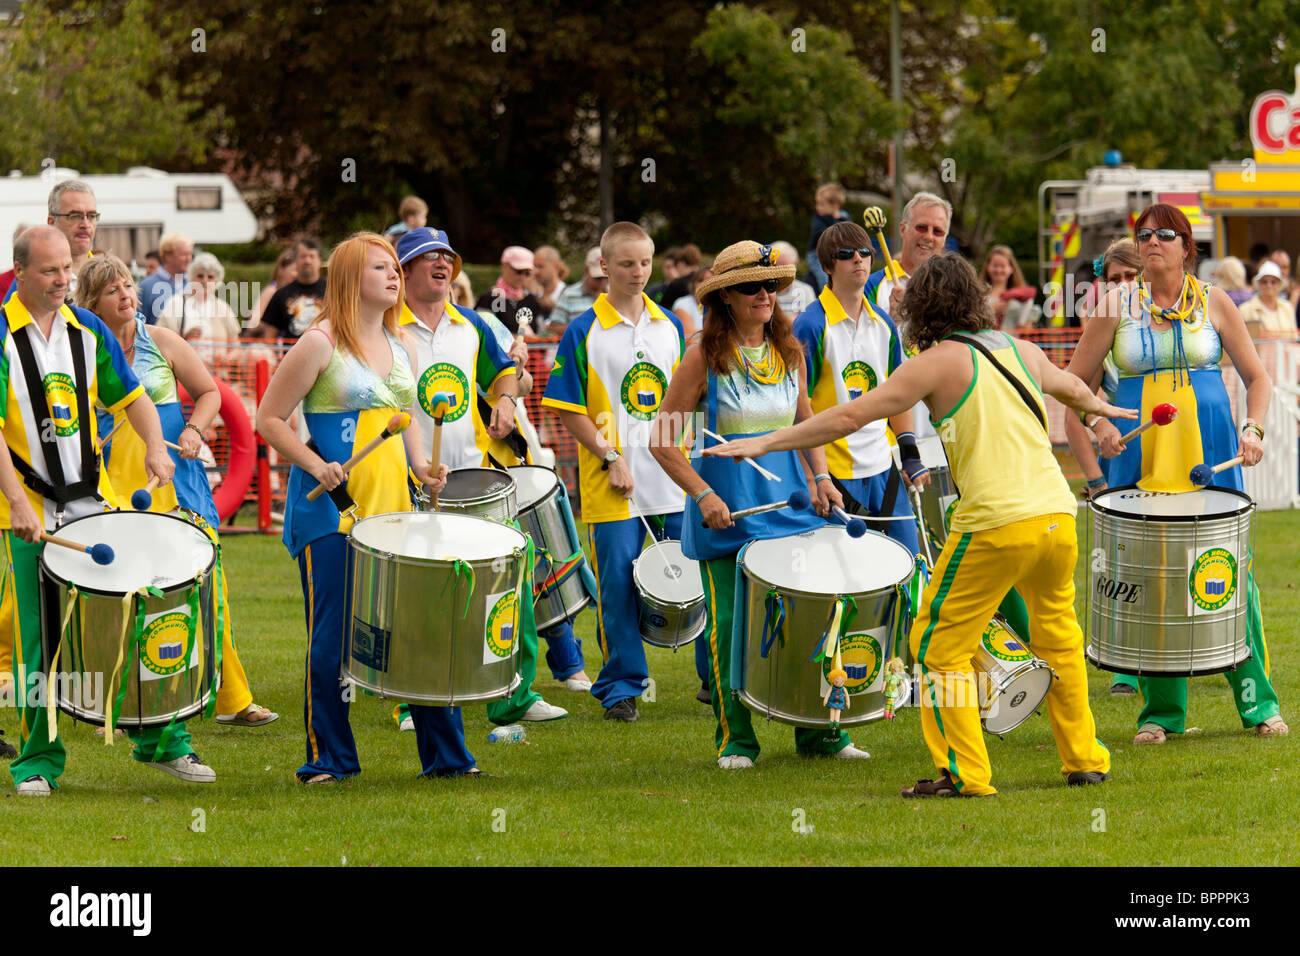 Samba-Trommeln-Band am Jahrmarkt durch großen Lärm-Gemeinschaft-Samba-Band  Stockfotografie - Alamy